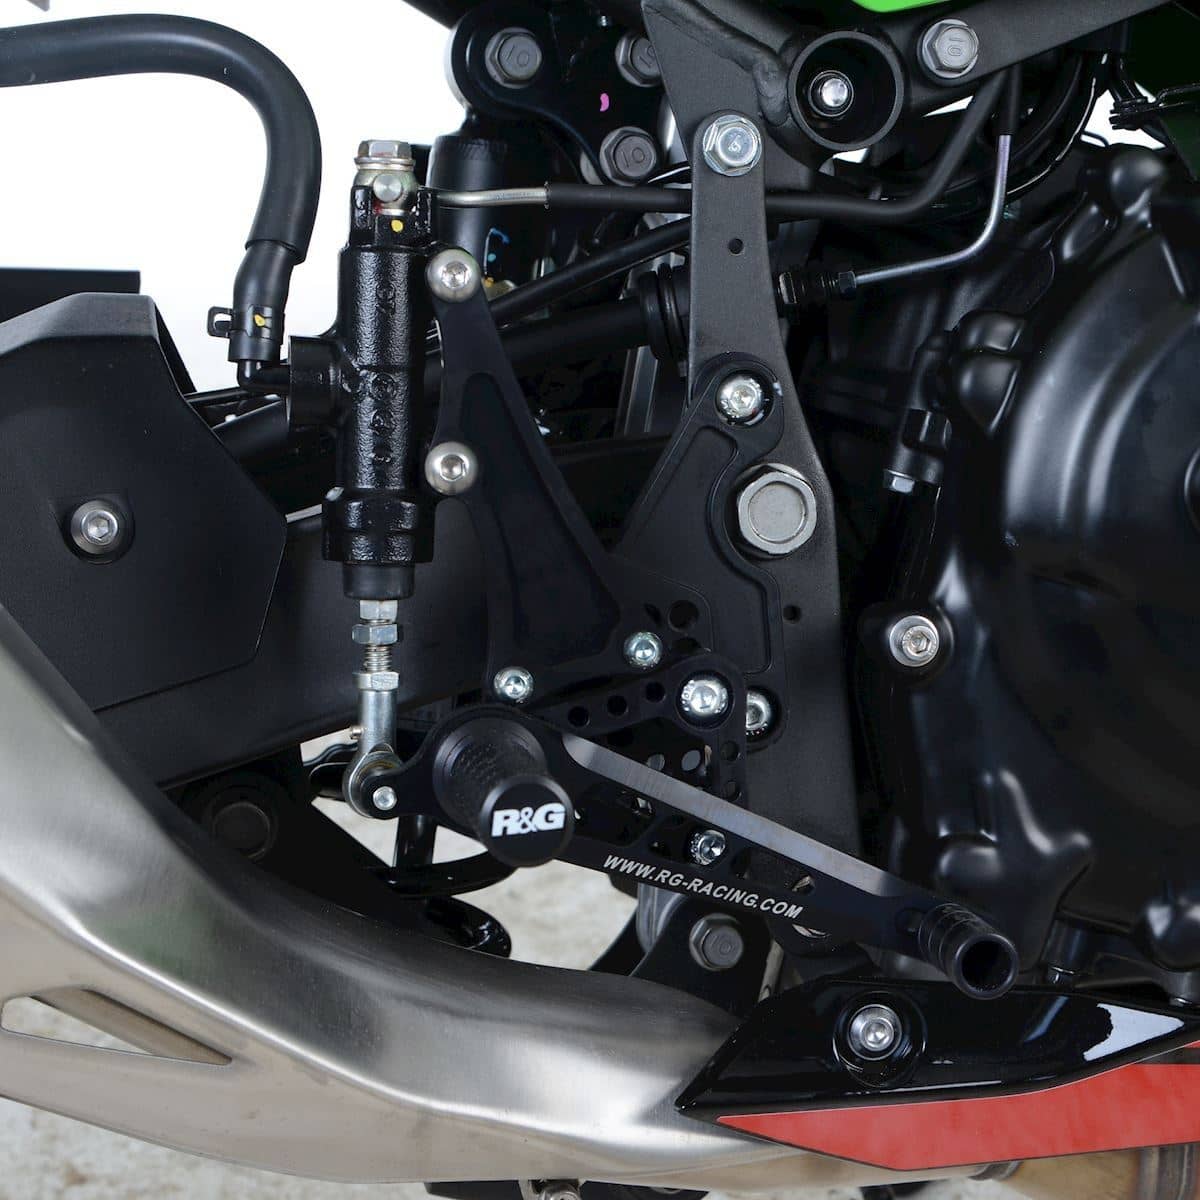 R&G Adjustable Rearsets Kawasaki Ninja 250 2018 – 2020